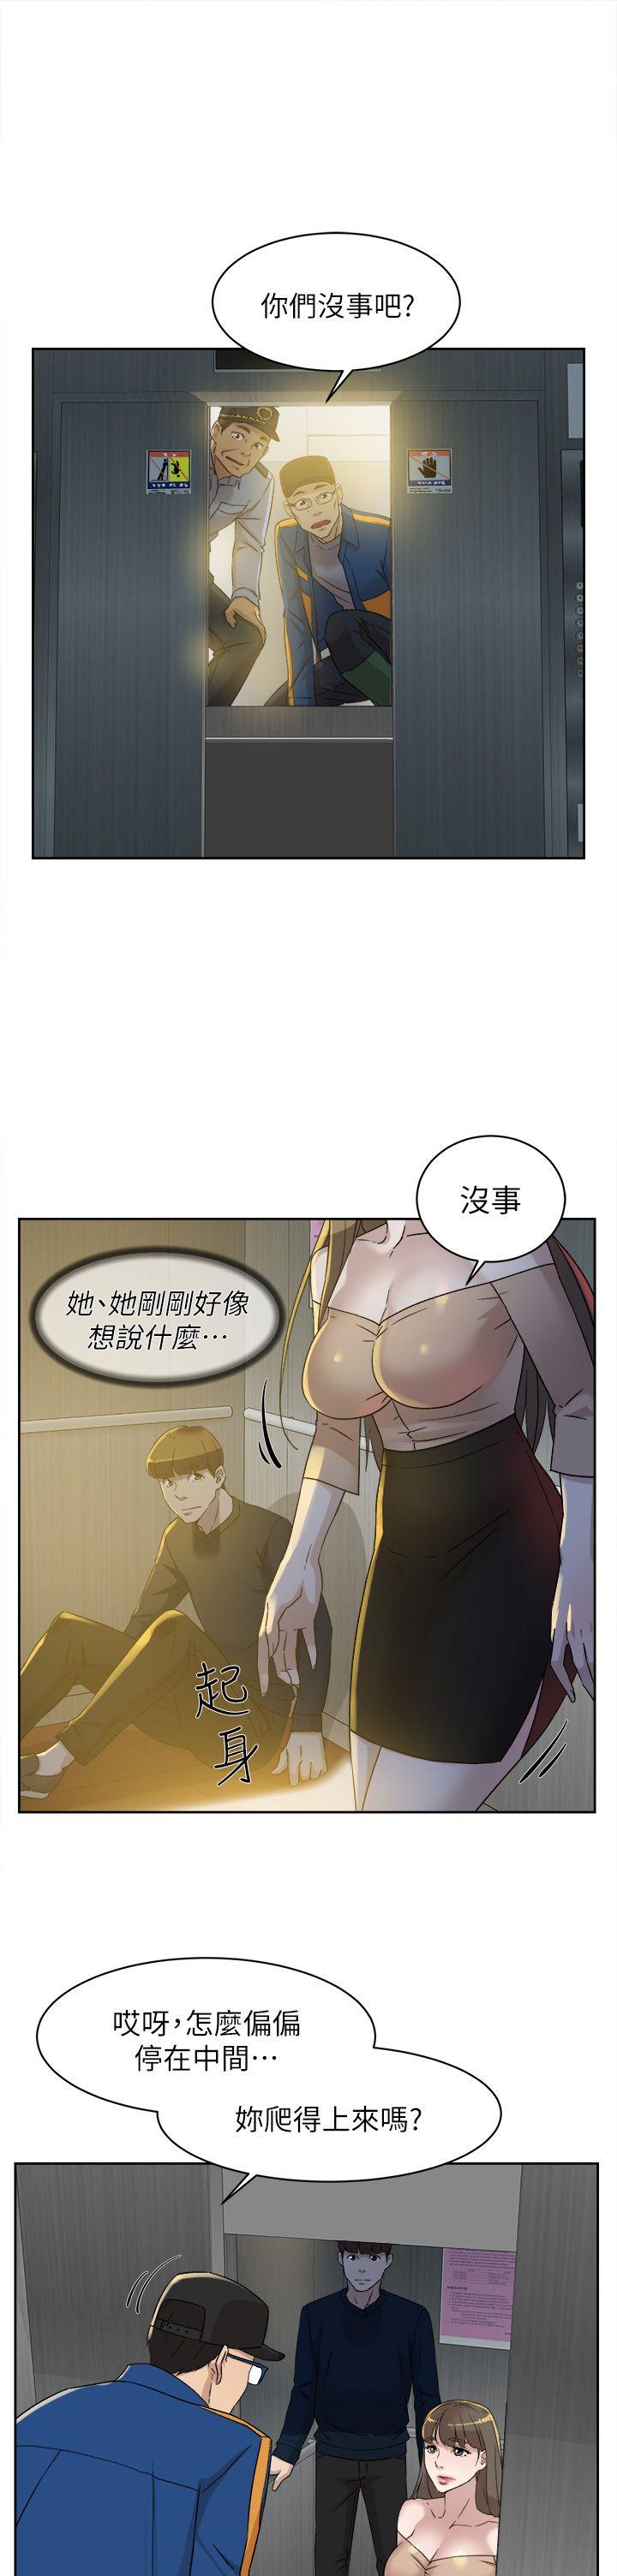 韩国污漫画 她的高跟鞋(無刪減) 第76话-昨晚发生的事 15